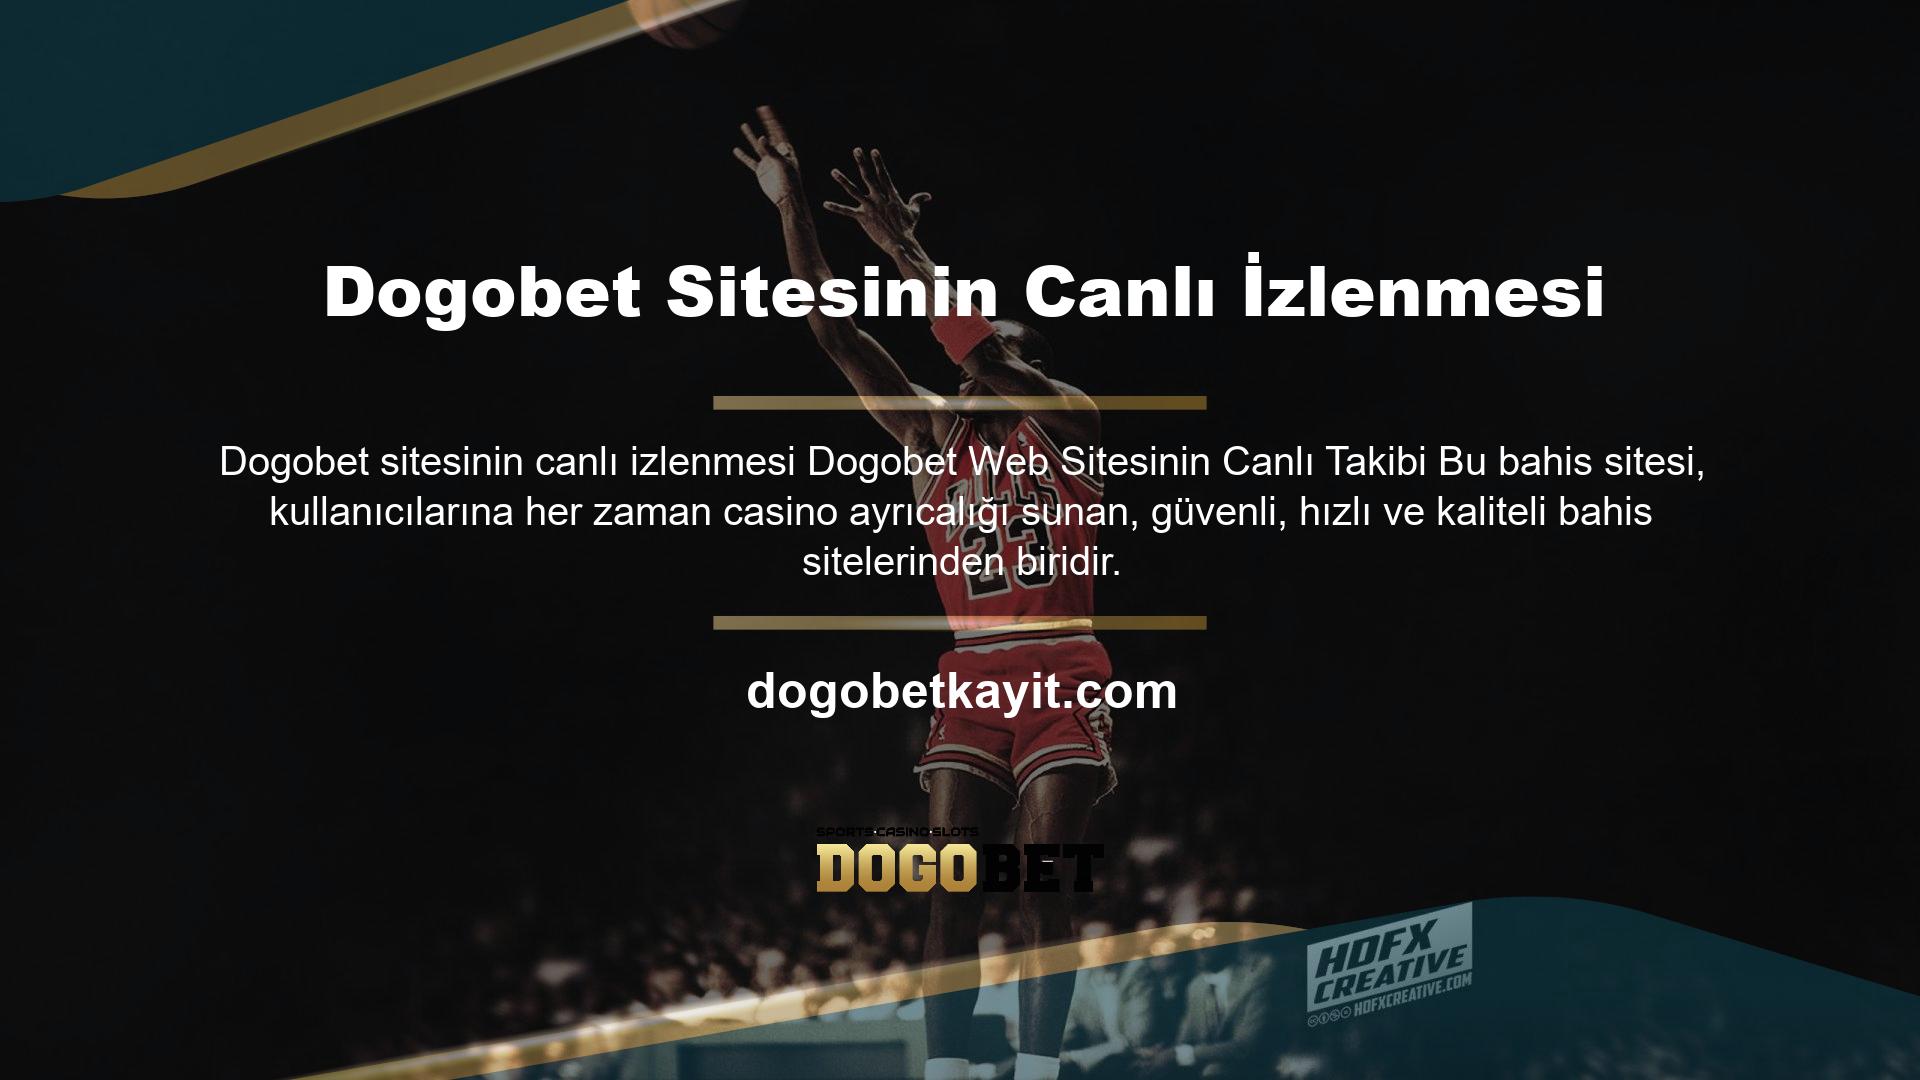 Dogobet, bahis sırasında ve sonrasında kullanıcılara mümkün olan tüm seçenekleri sunmak için Dogobet TV sistemini tanıttı